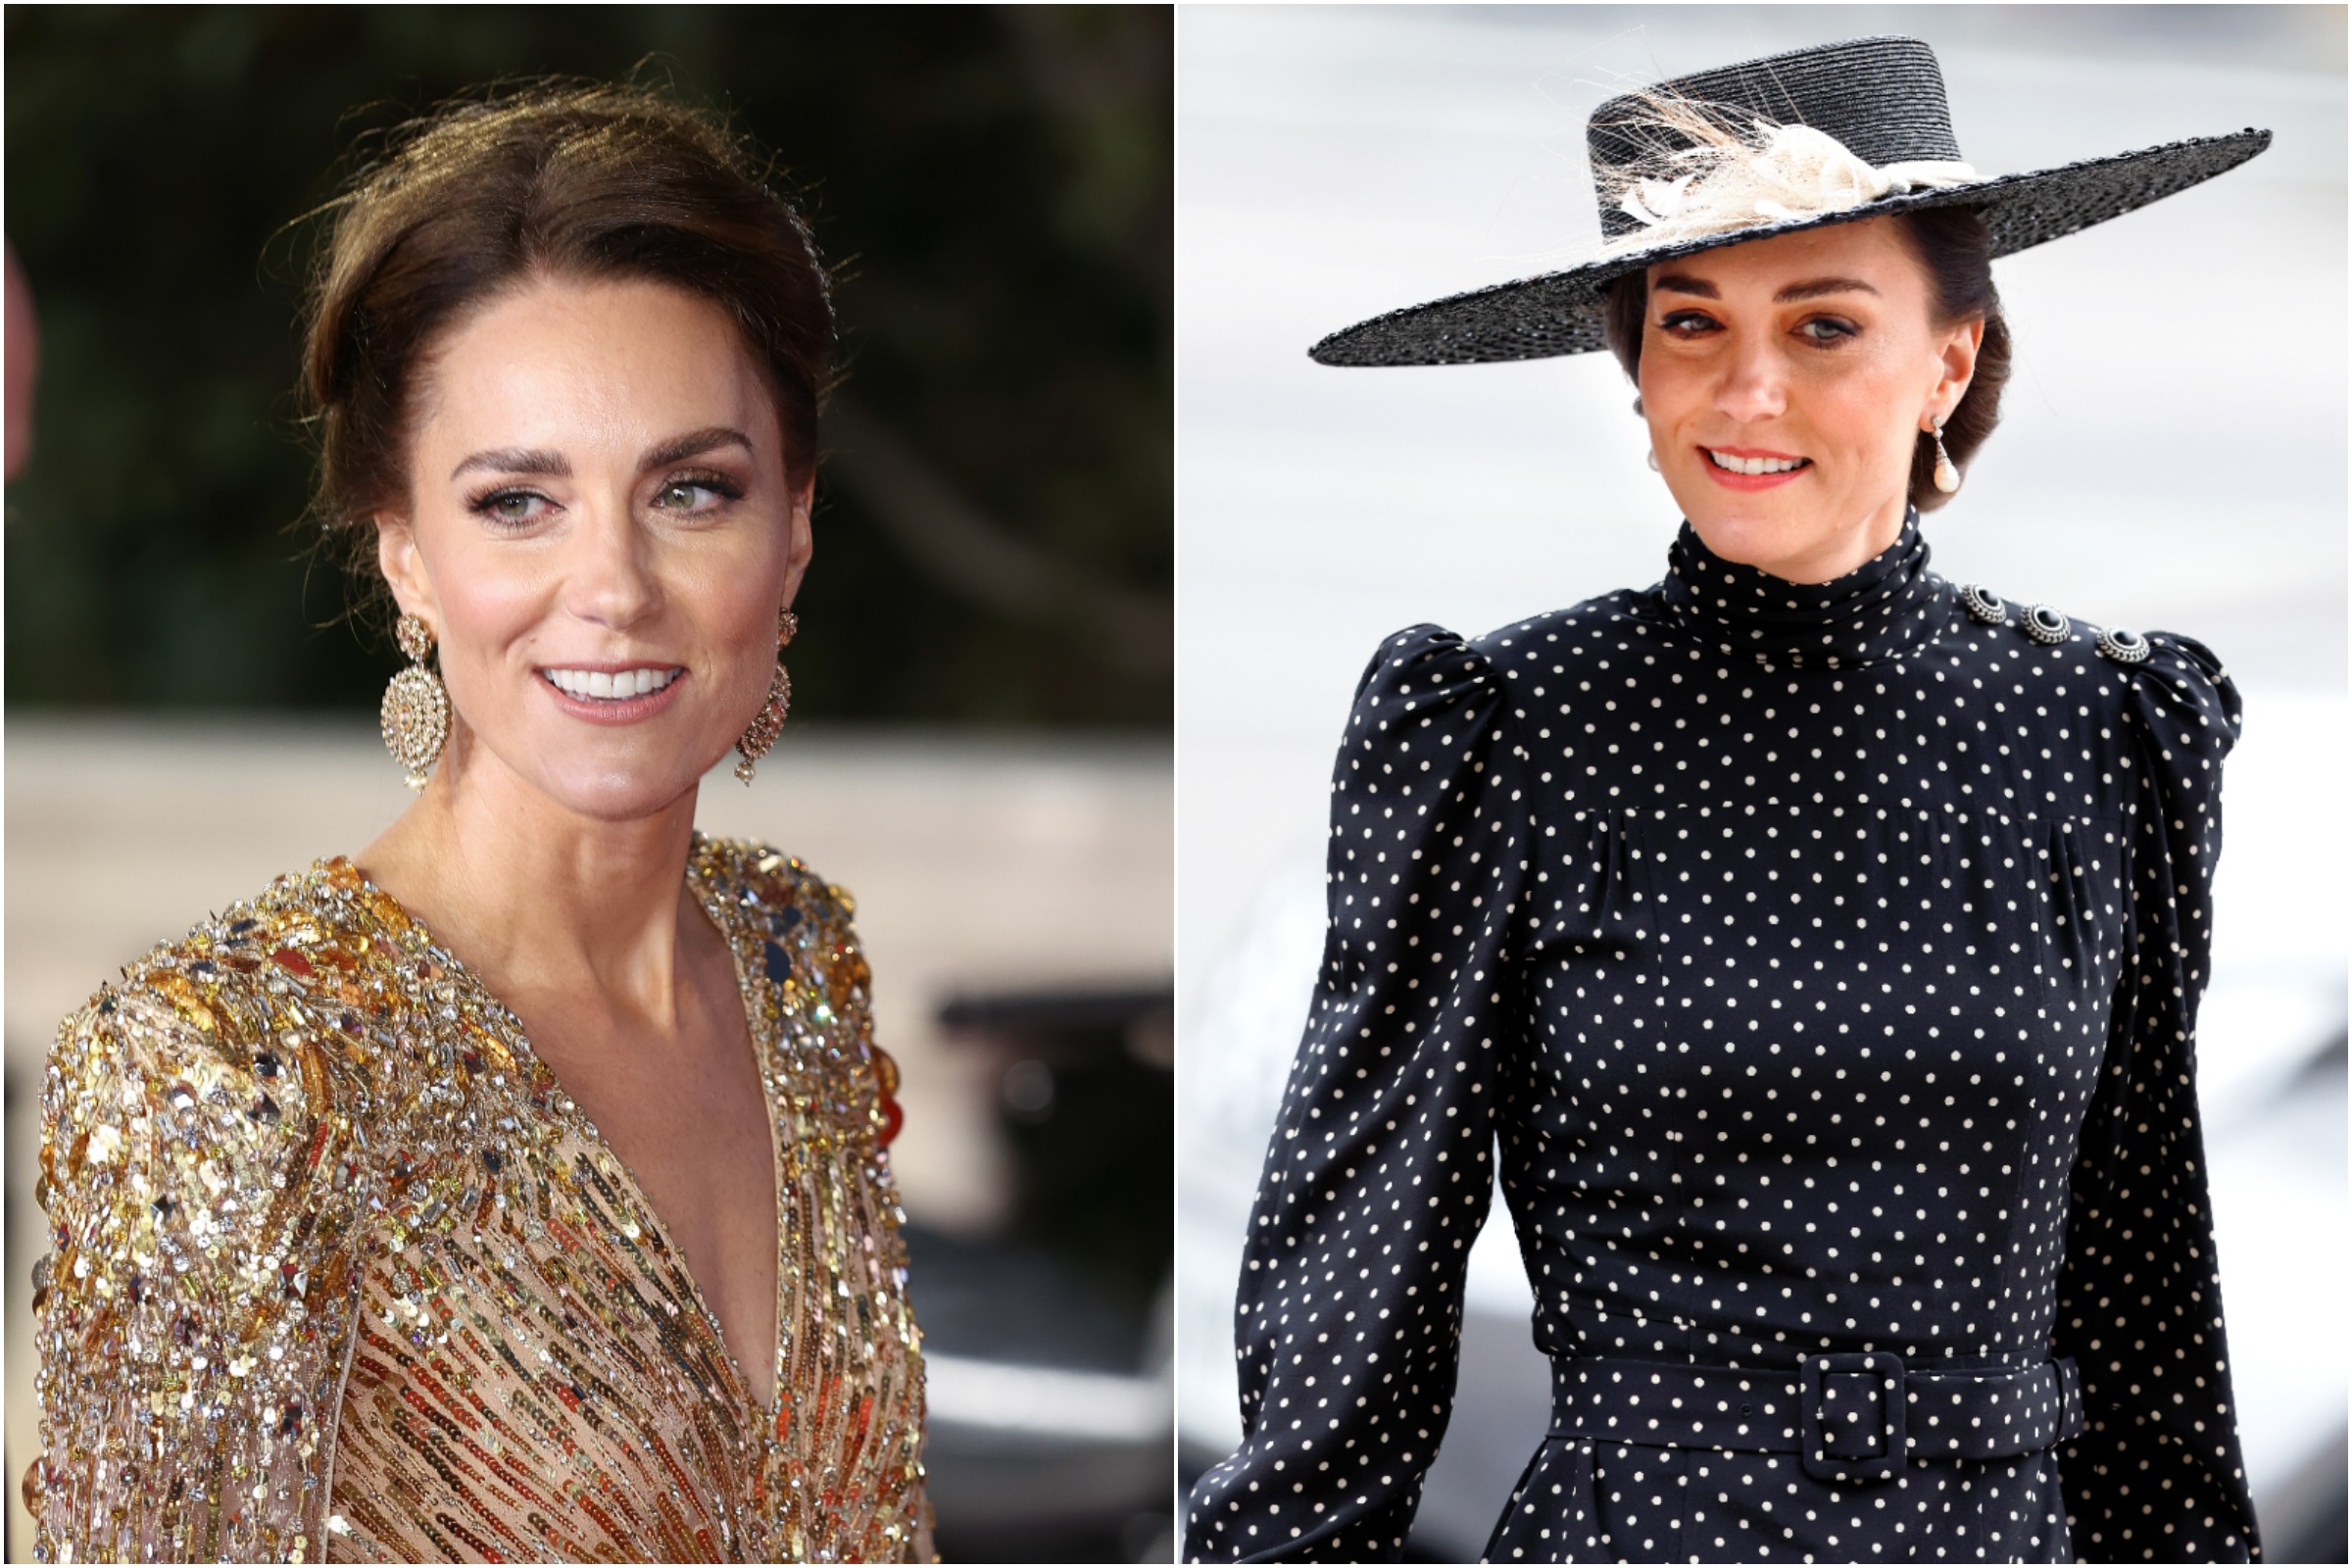 Who styles Kate Middleton?